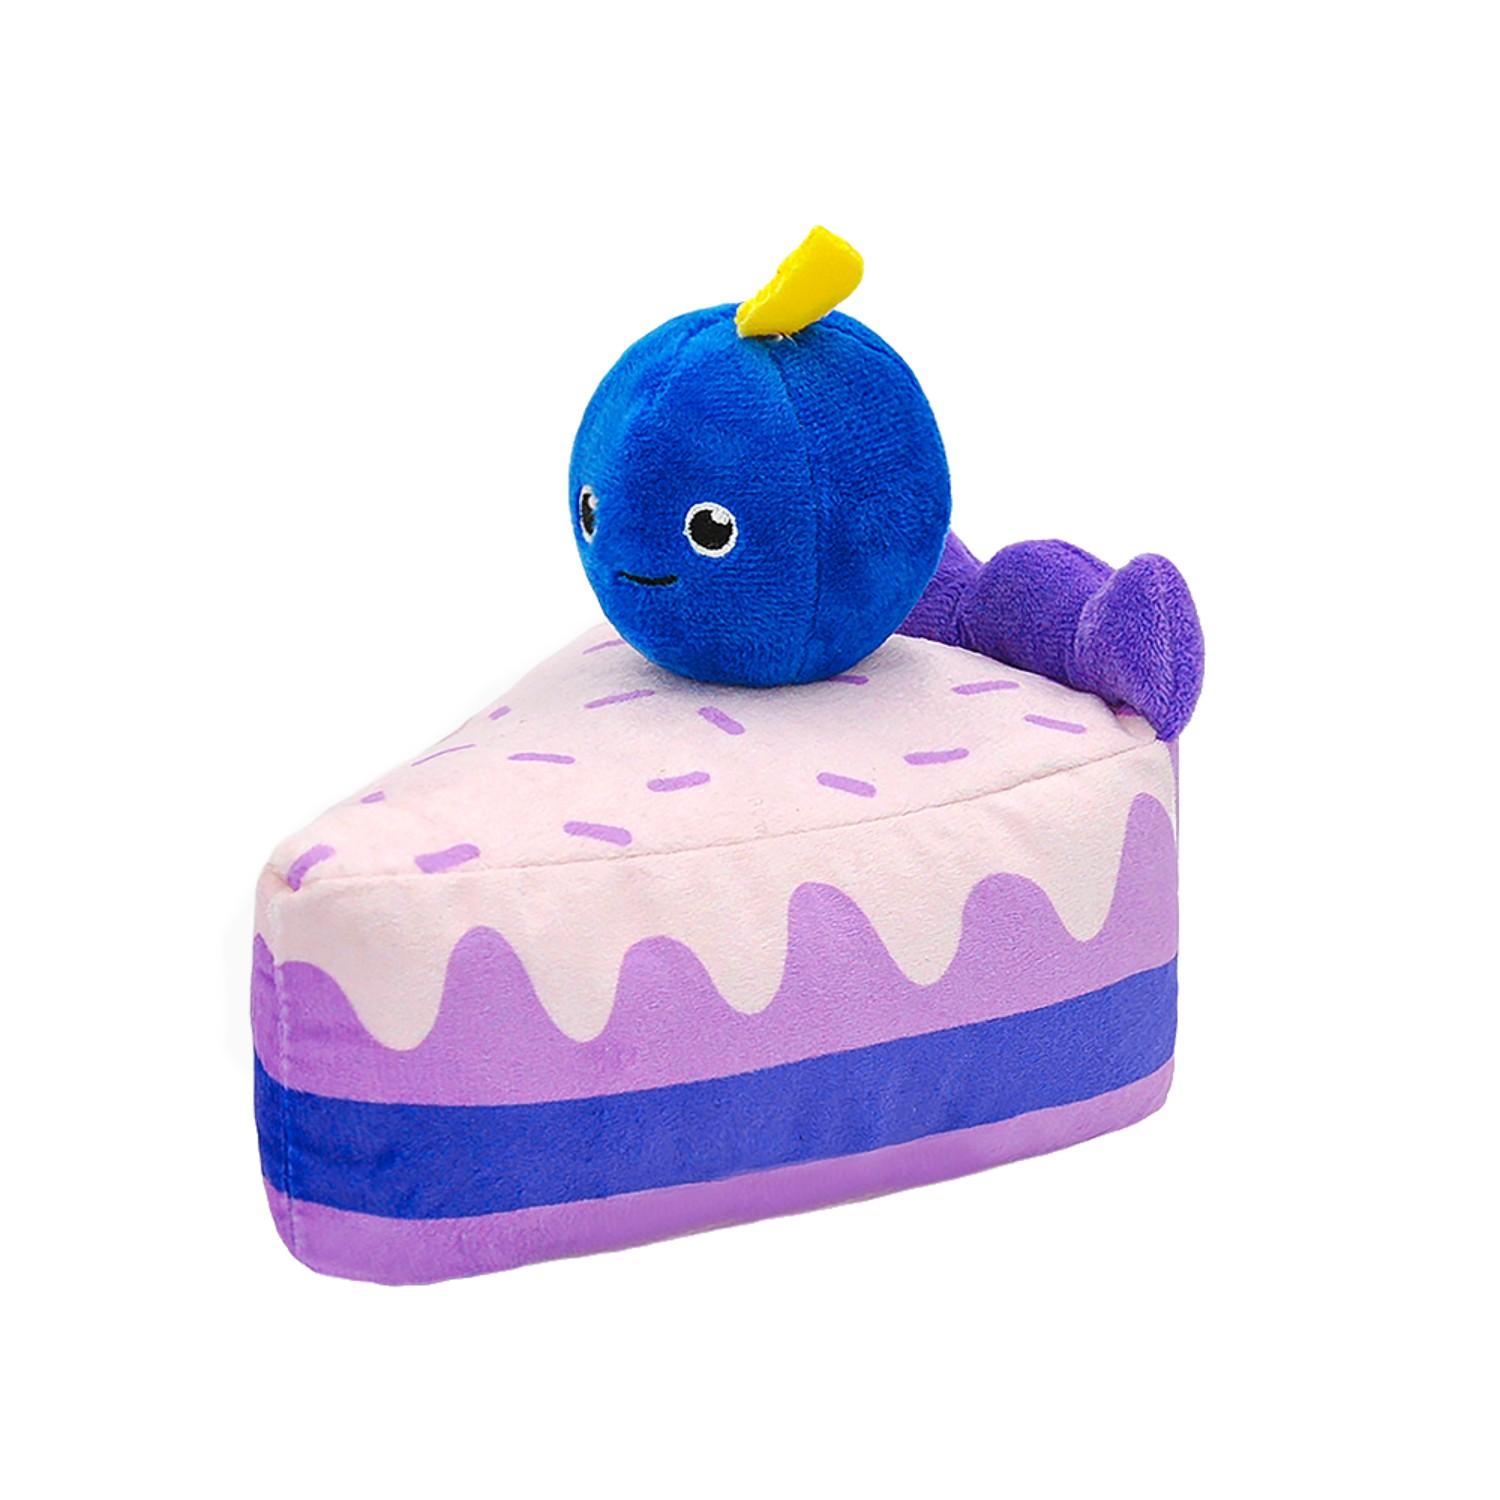 HugSmart Pooch Sweets Dog Toy - Blueberry Cake